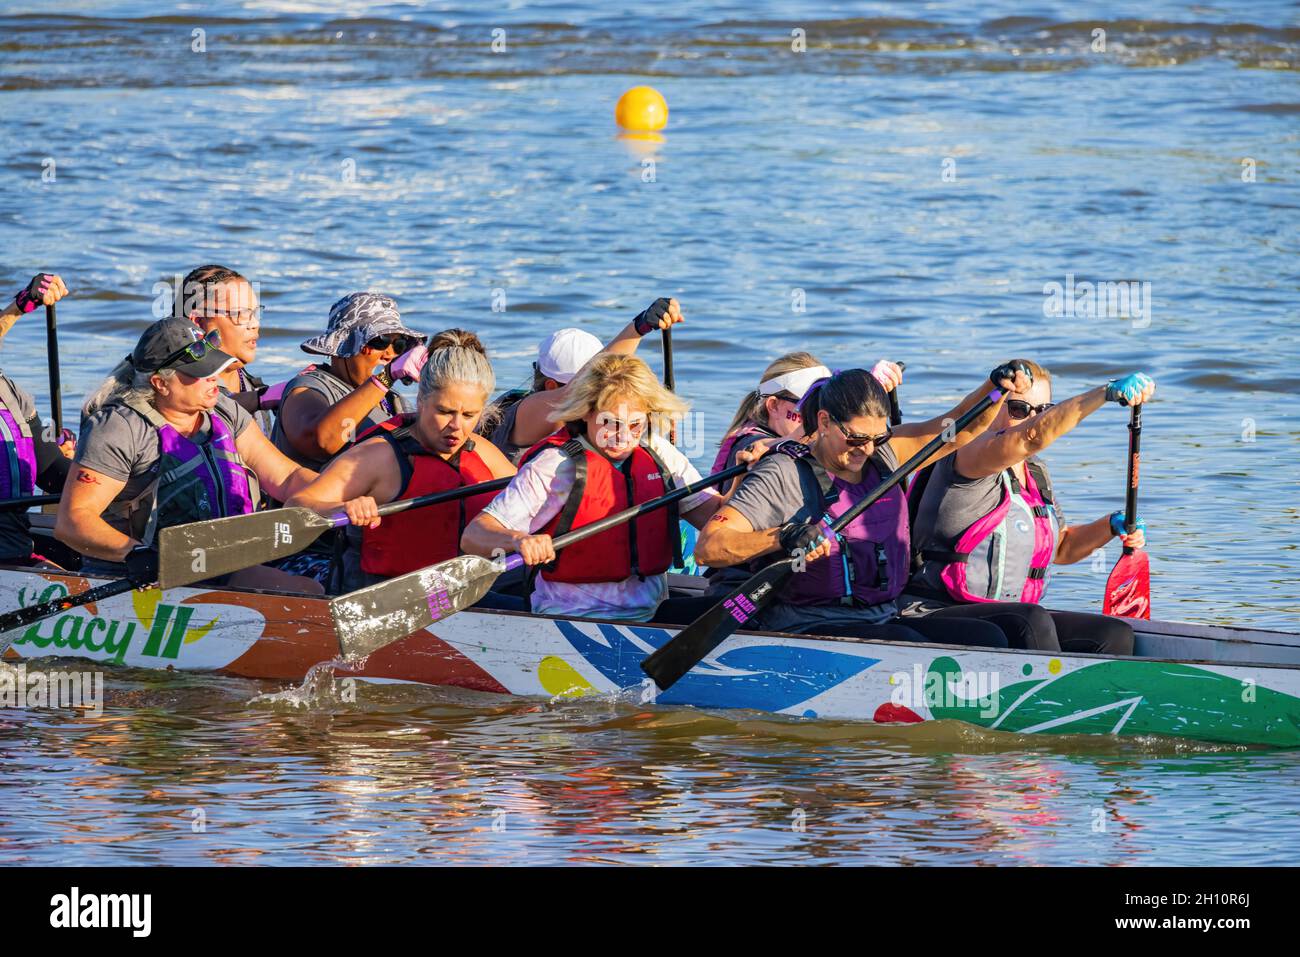 Oklahoma, 2. Okt 2021 - Menschen rudern auf dem Drachenboot während des Regatta Festivals Stockfoto